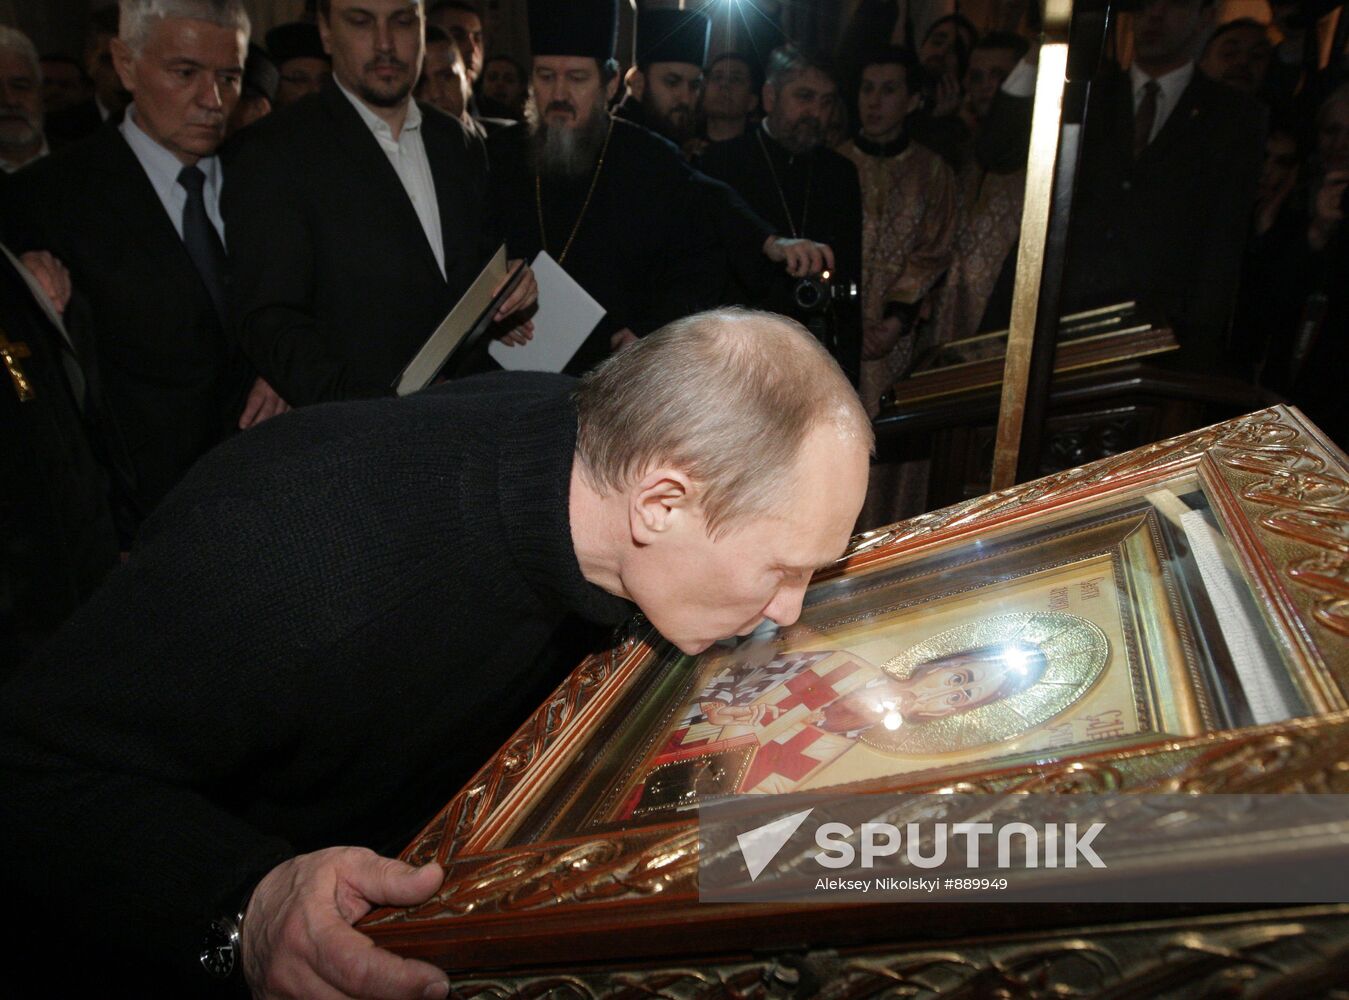 Vladimir Putin's visit to Serbia